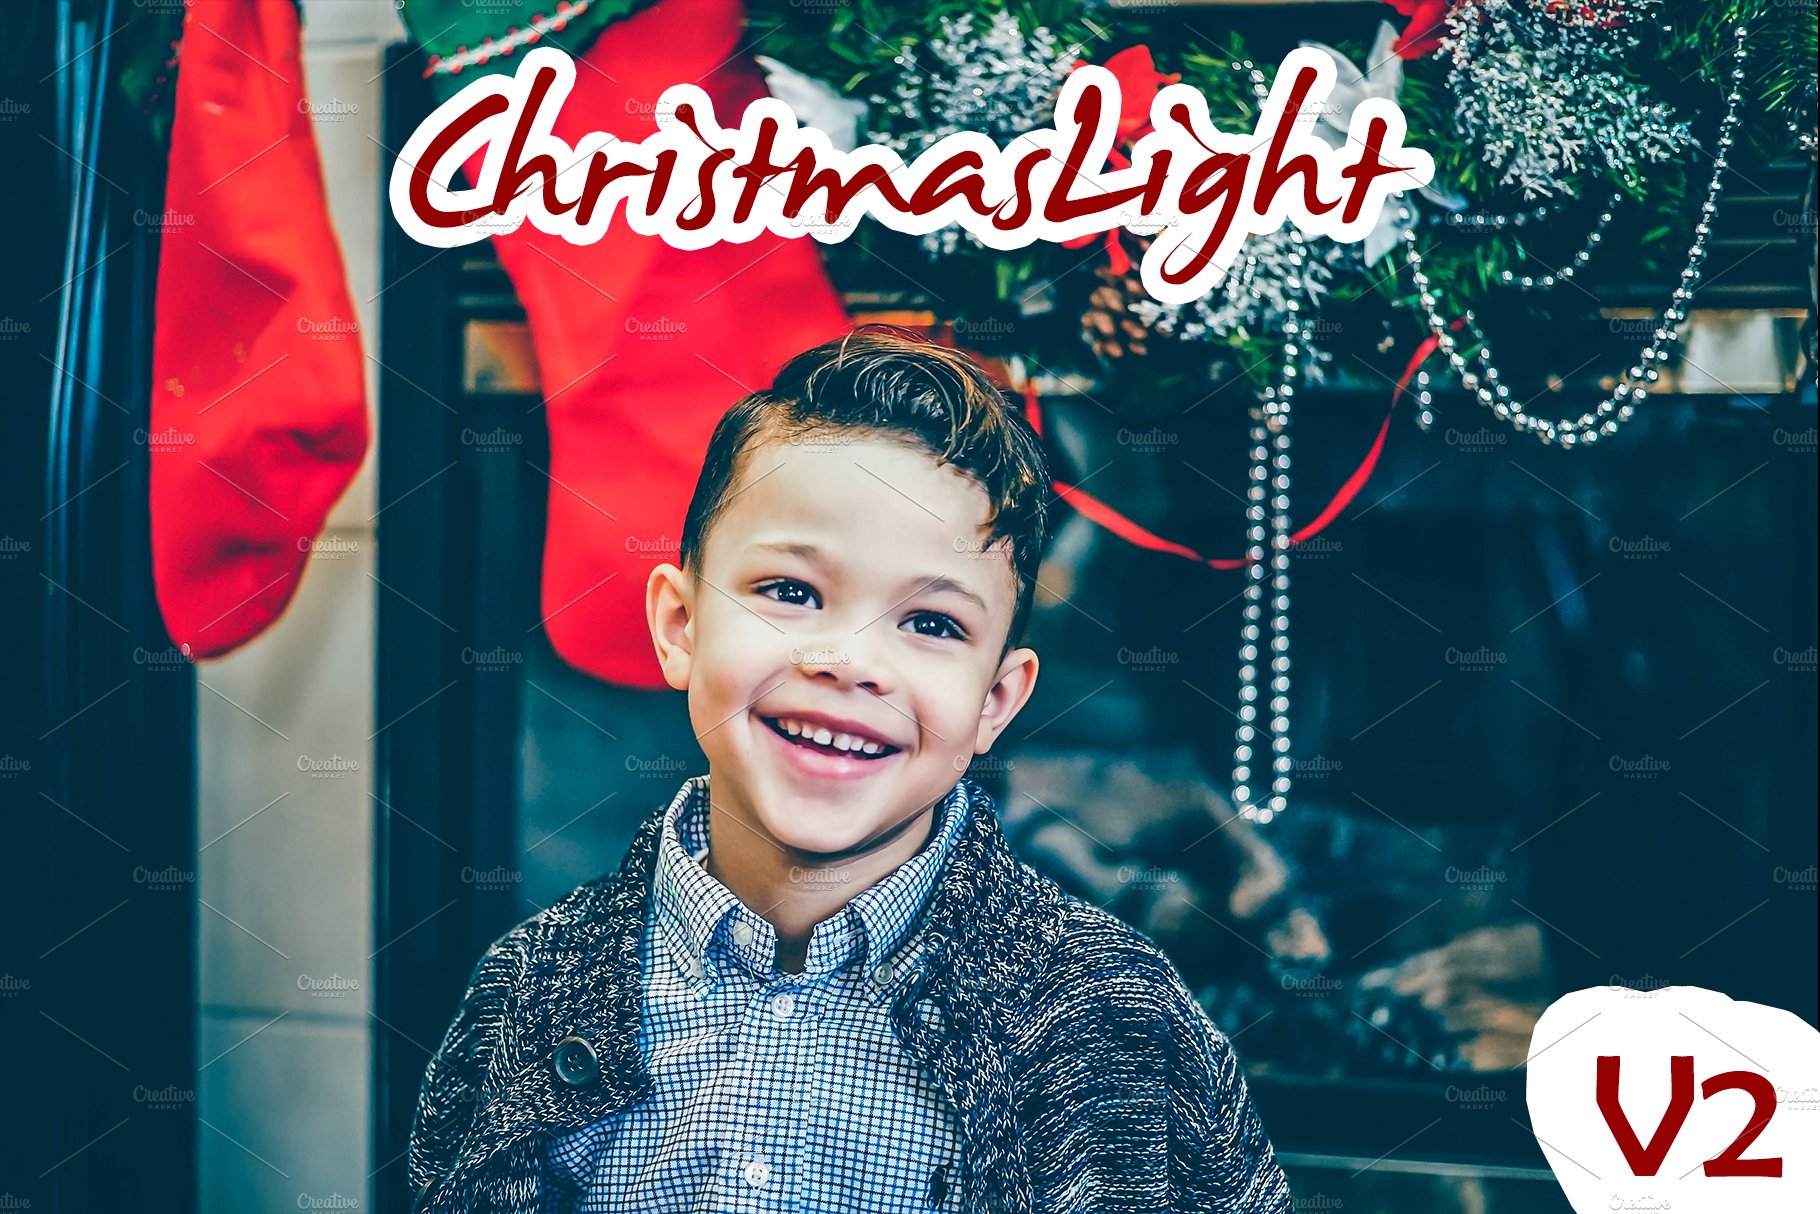 ChristmasLight V2- Lightroom Presetscover image.